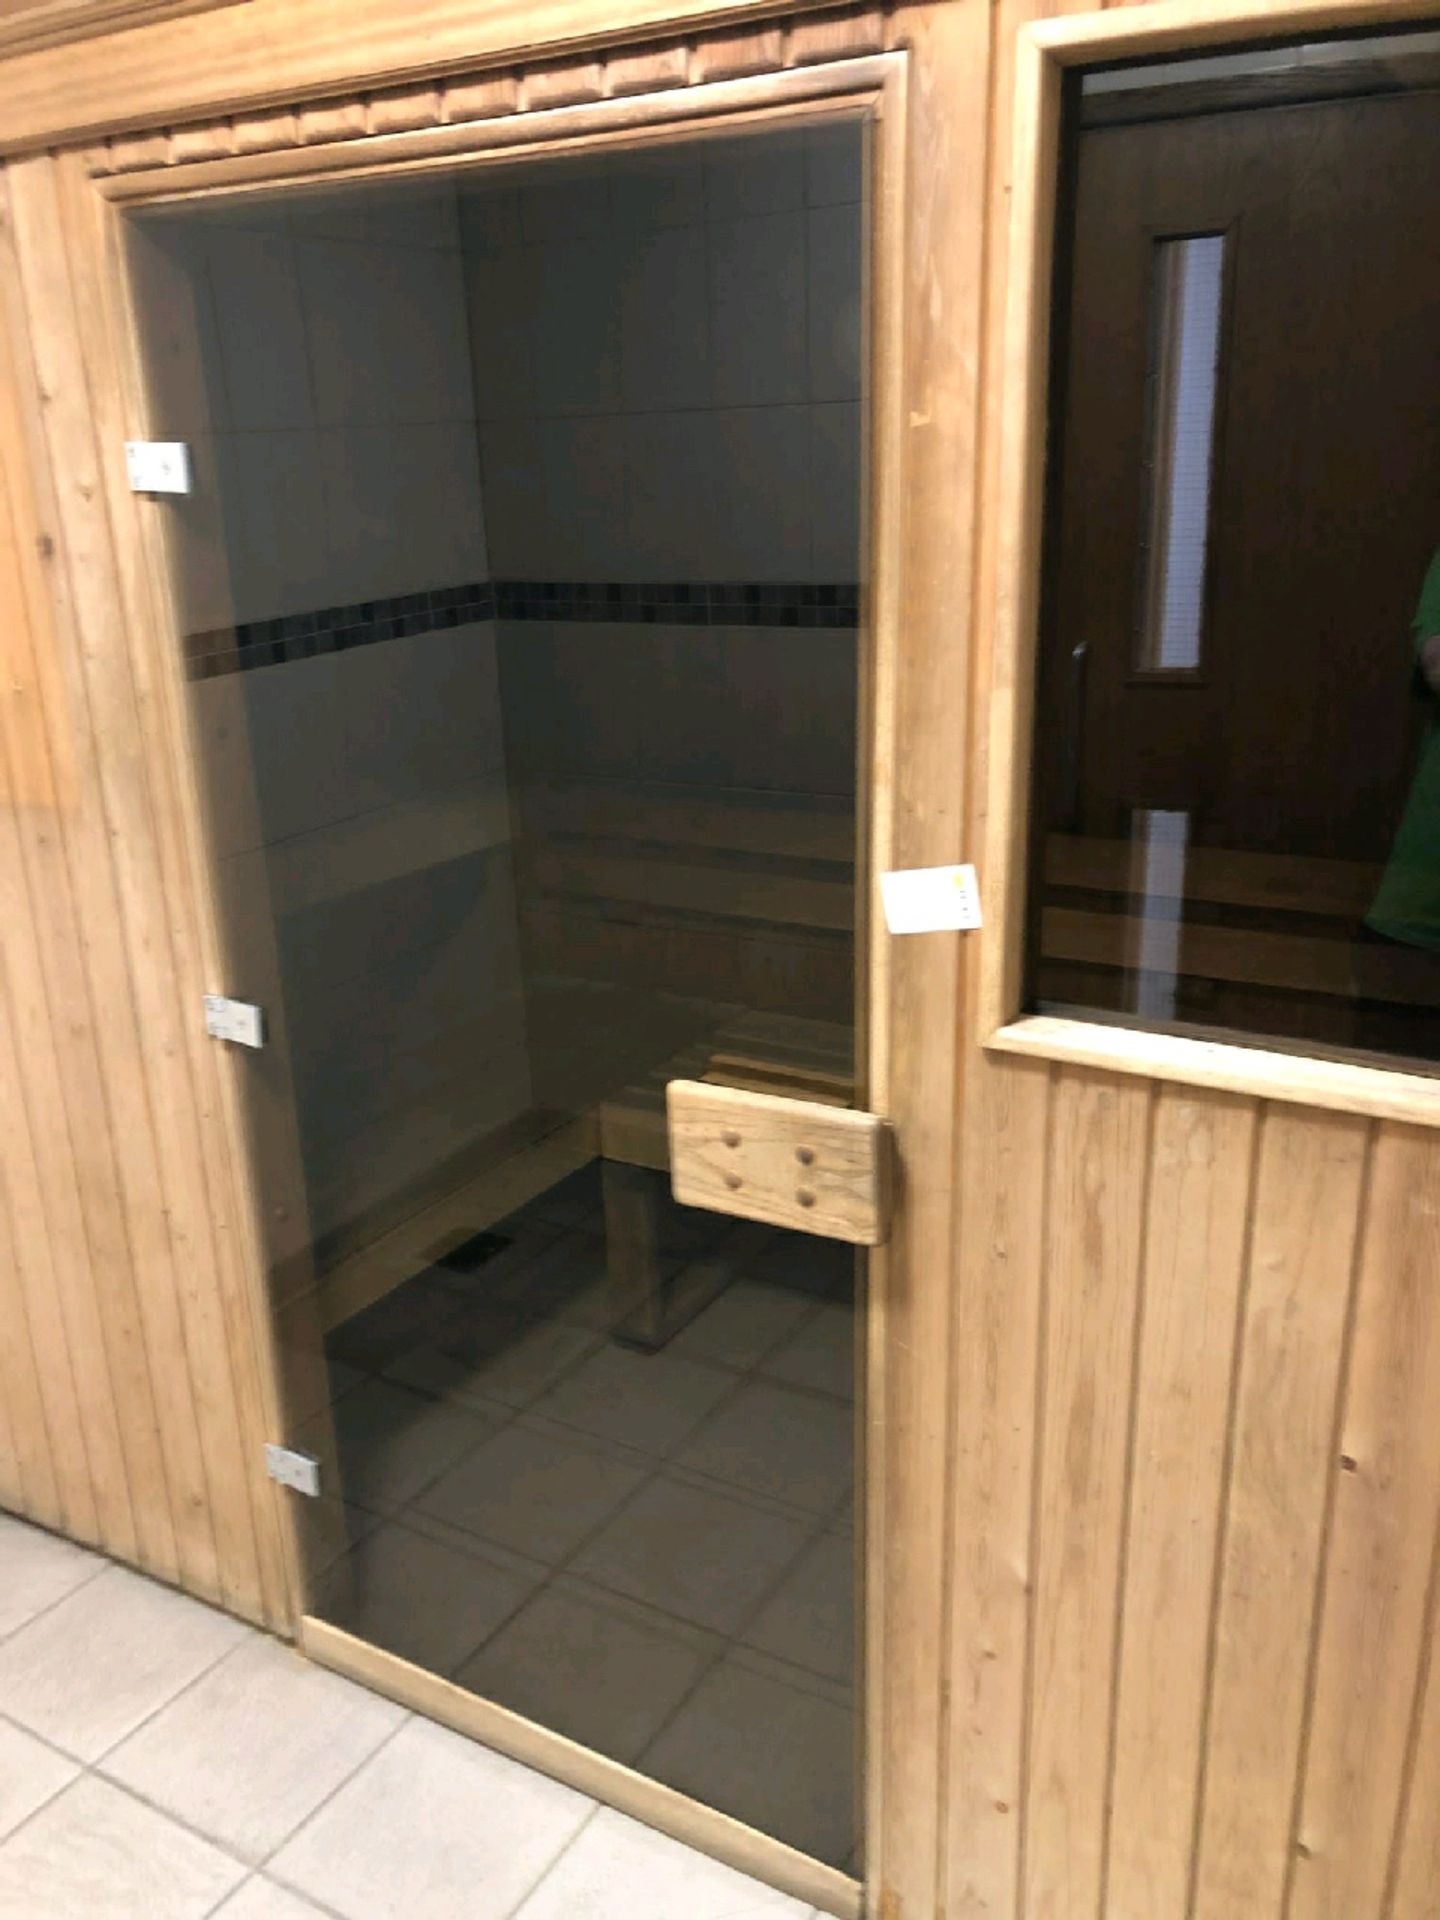 Sauna - Image 2 of 9